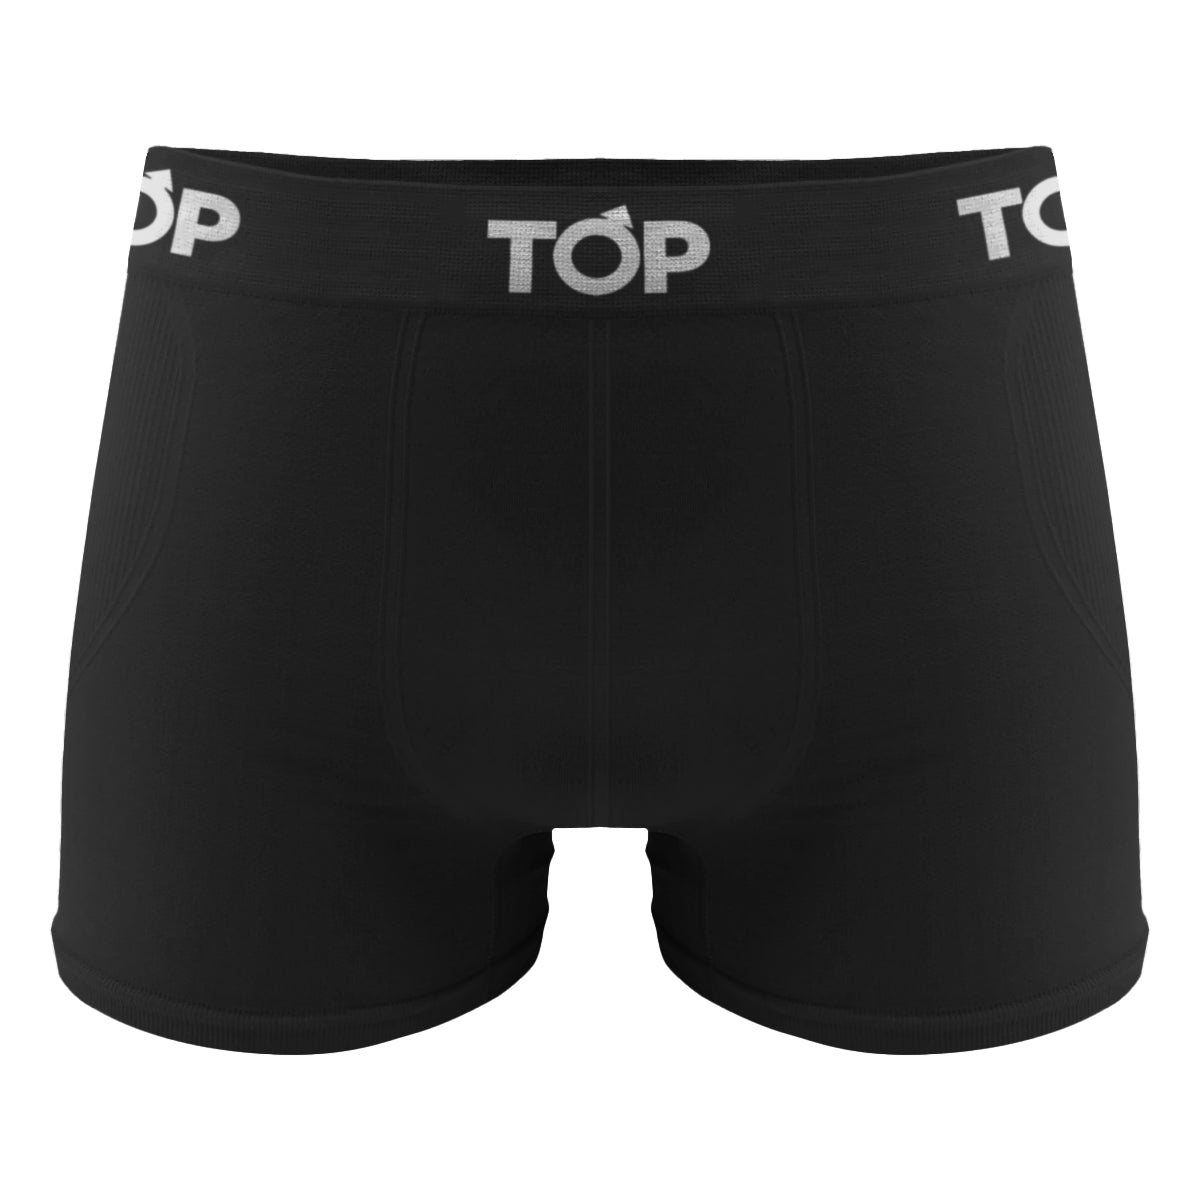 Top Underwear - El slip 511 Classic es una alternativa para quienes gustan  de colores más tradicionales